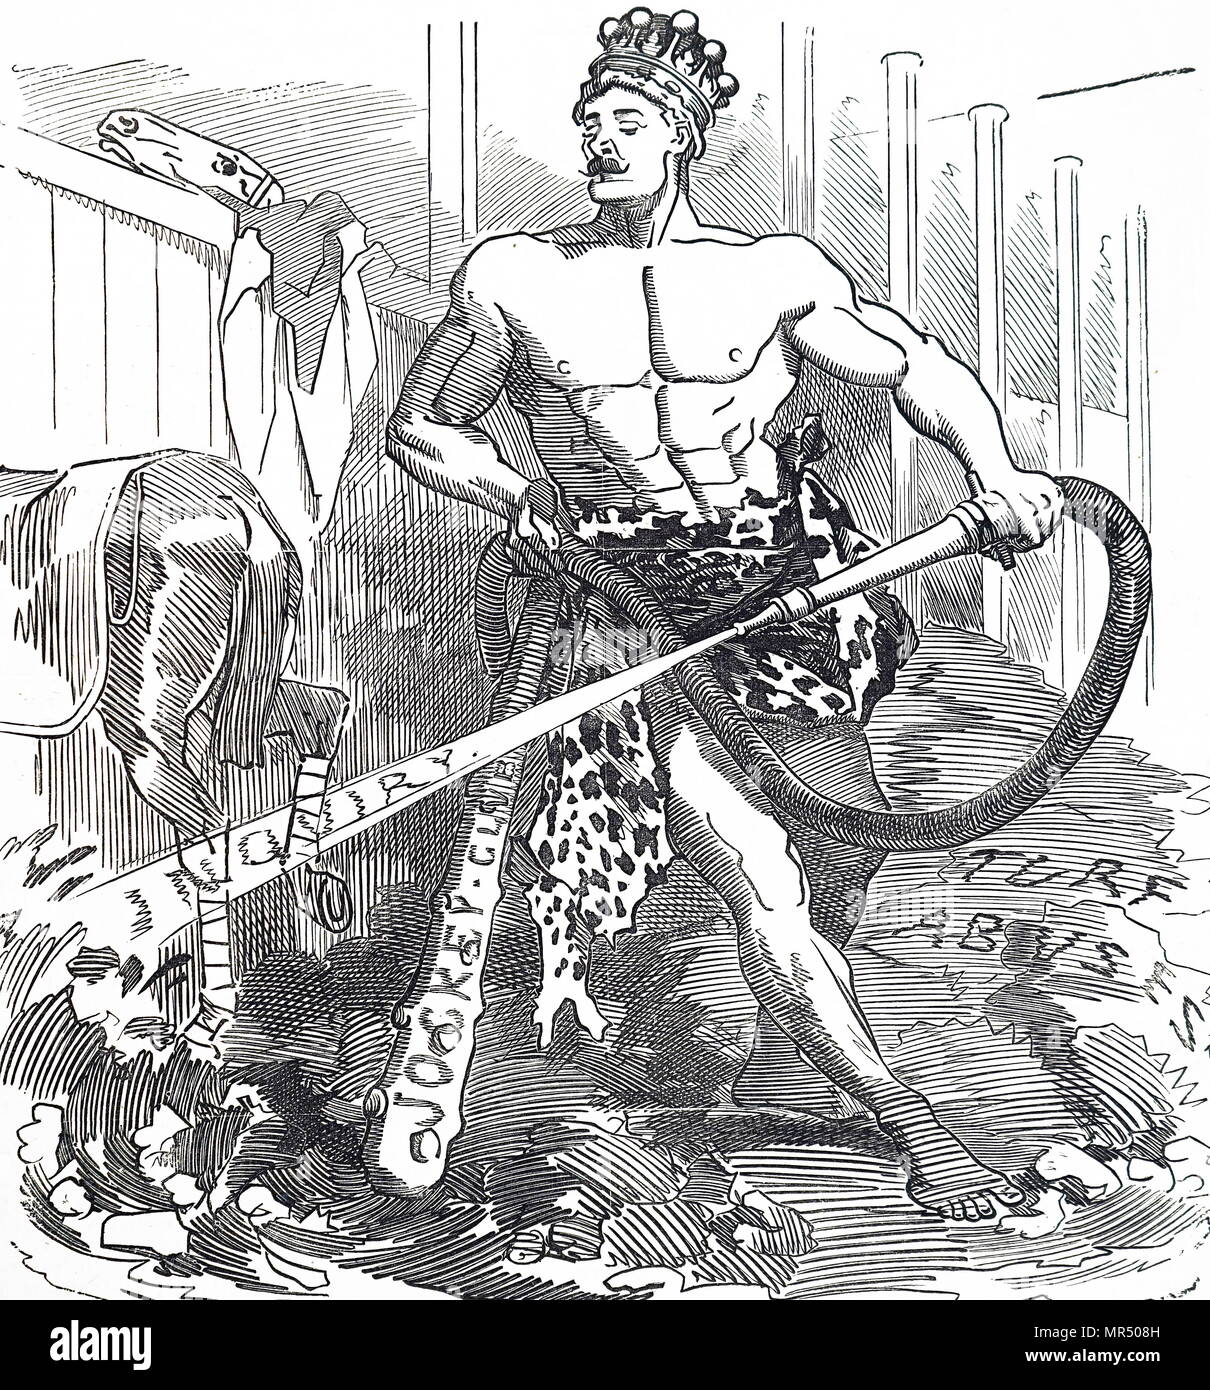 Caricature intitulée 'Hercules dans le stable Augias'. Hercules est représenté essayer de nettoyer les écuries d'Augias. La bande dessinée est en commentant les abus dans le sport des courses hippiques a conduit à une enquête en cours. En date du 19e siècle Banque D'Images